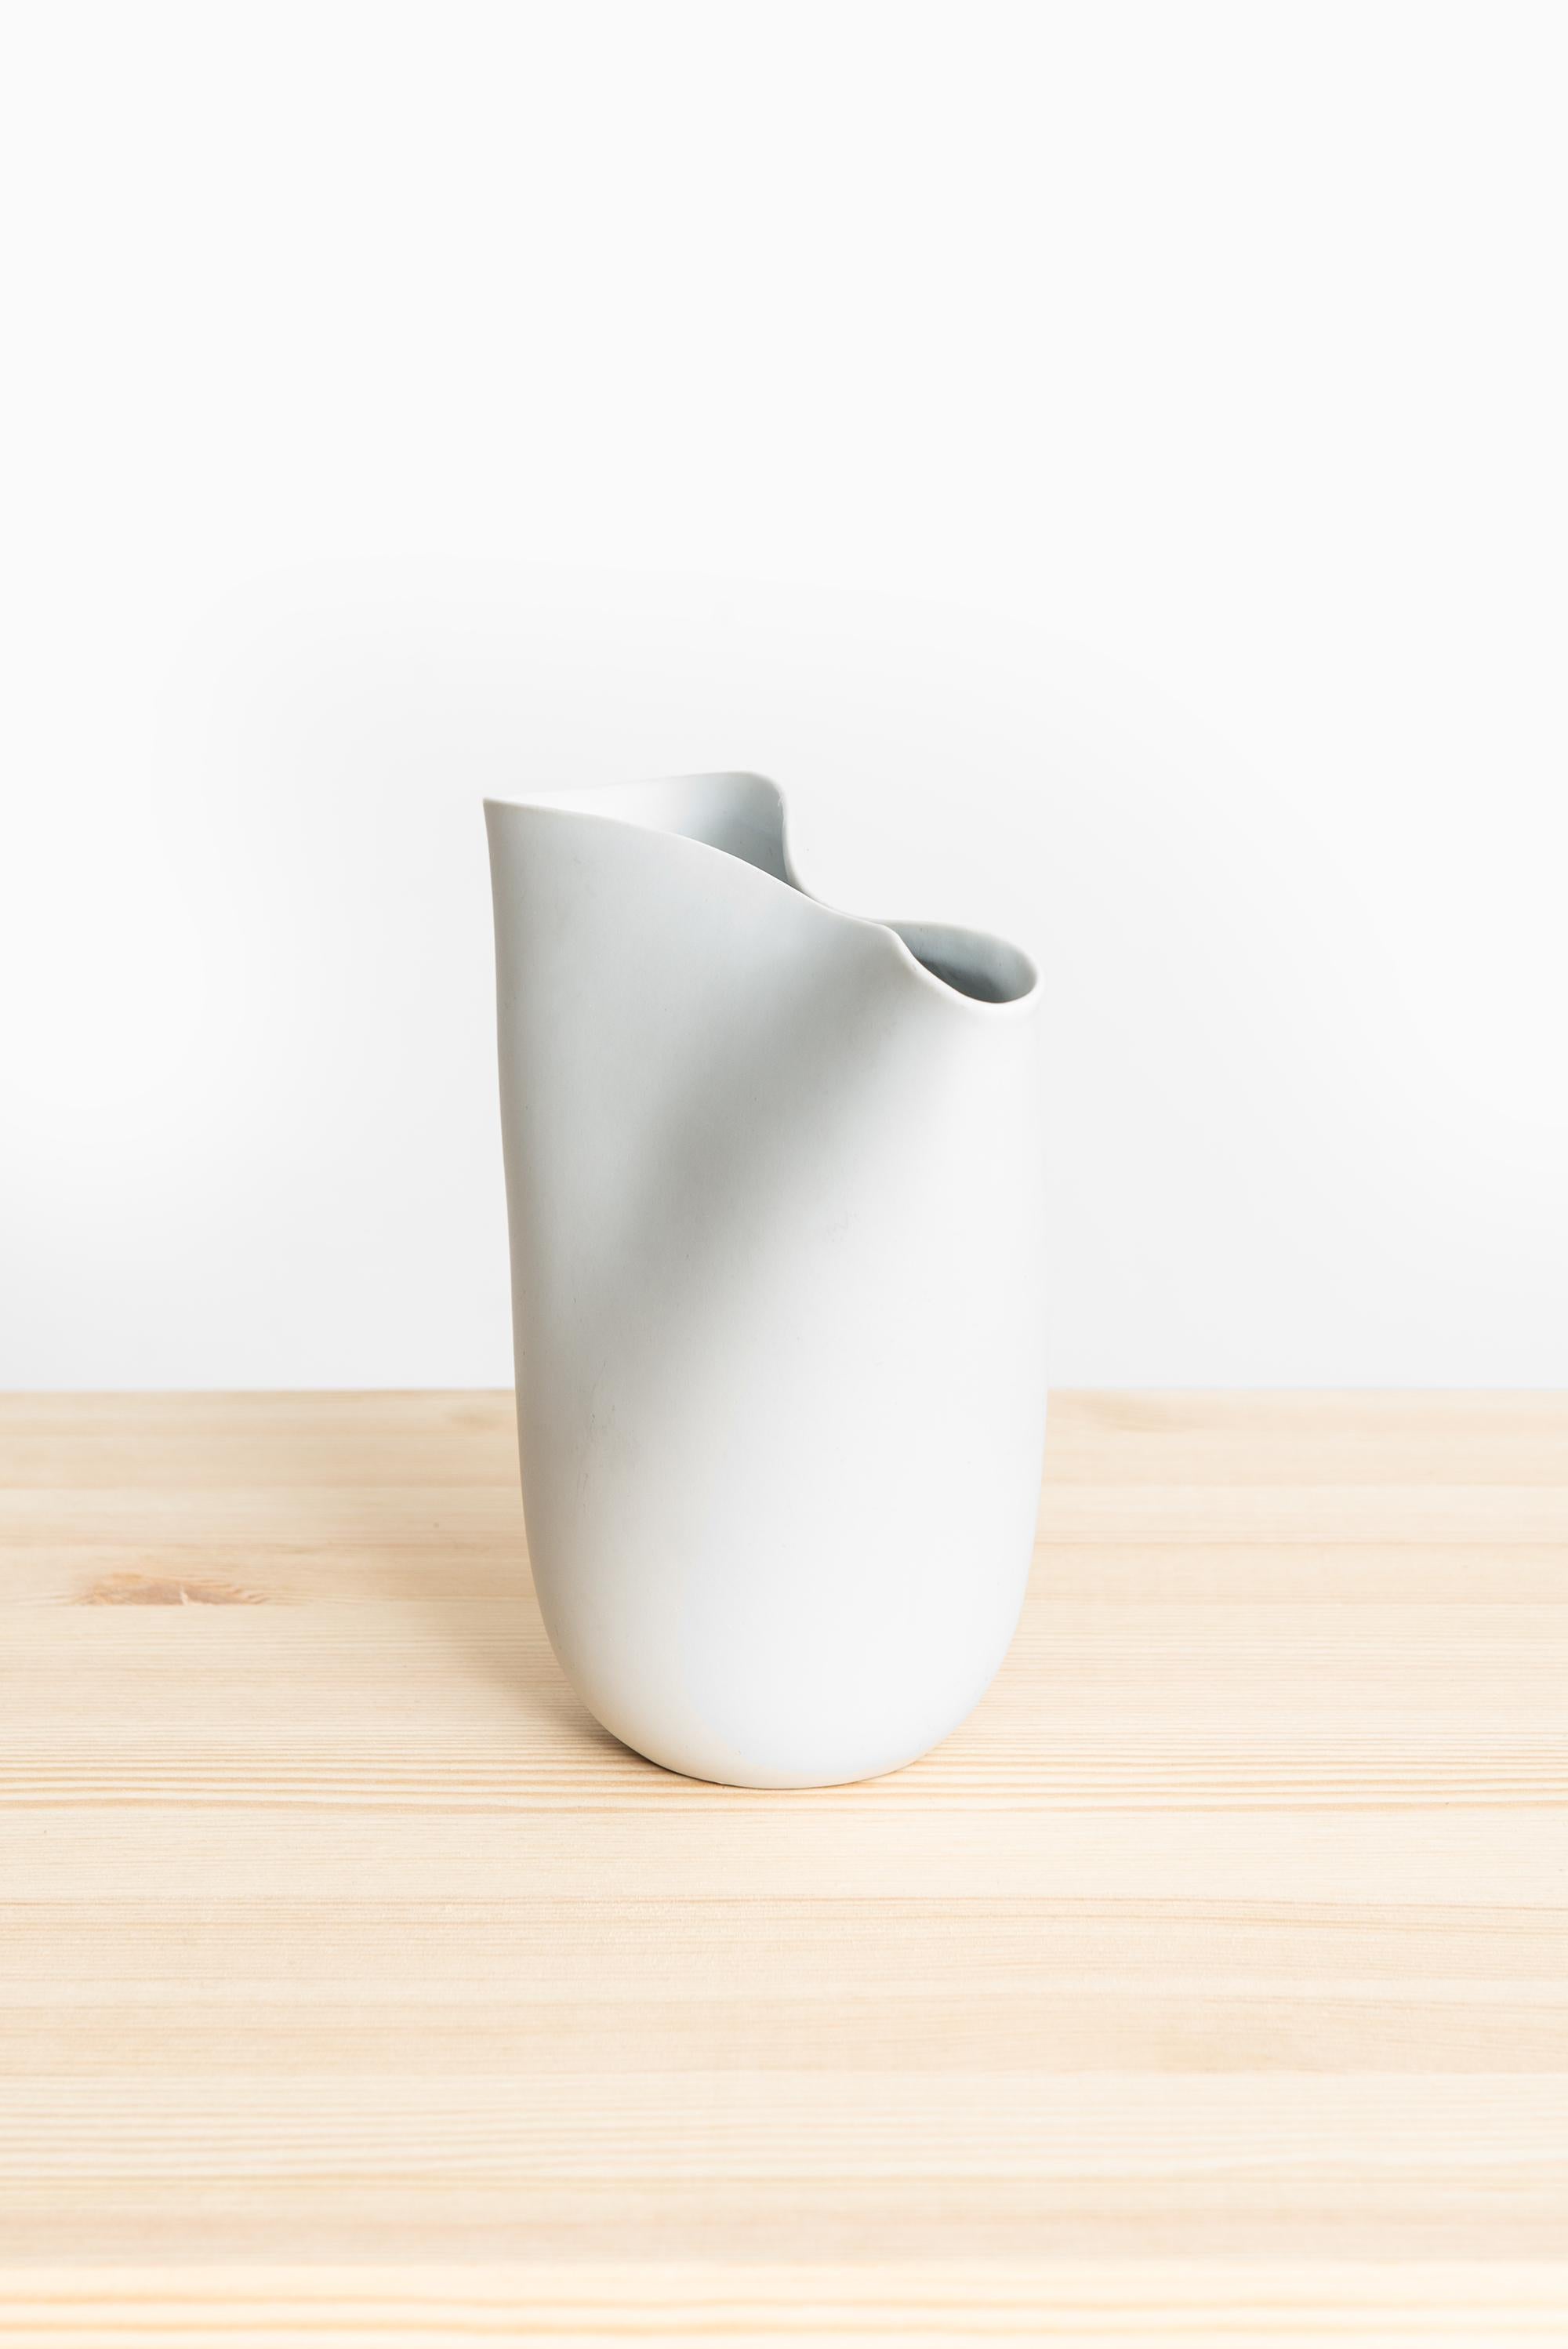 Grand vase en céramique modèle Veckla conçu par Stig Lindberg. Produit par Gustavsberg en Suède.